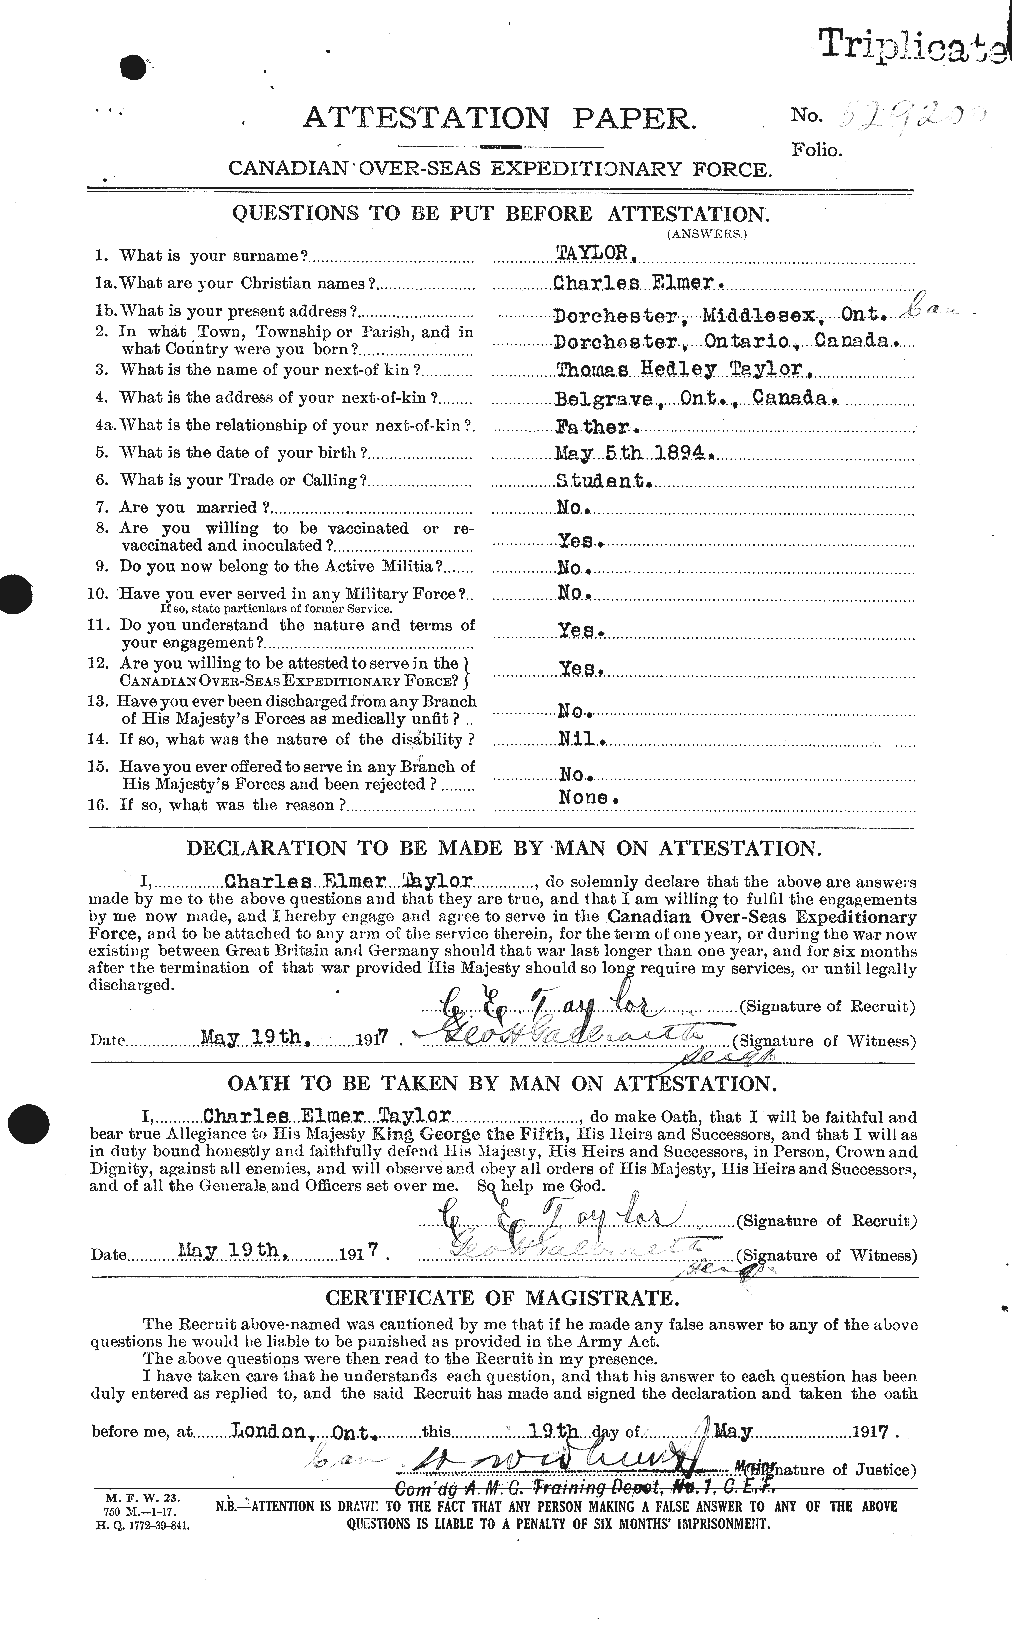 Dossiers du Personnel de la Première Guerre mondiale - CEC 626838a